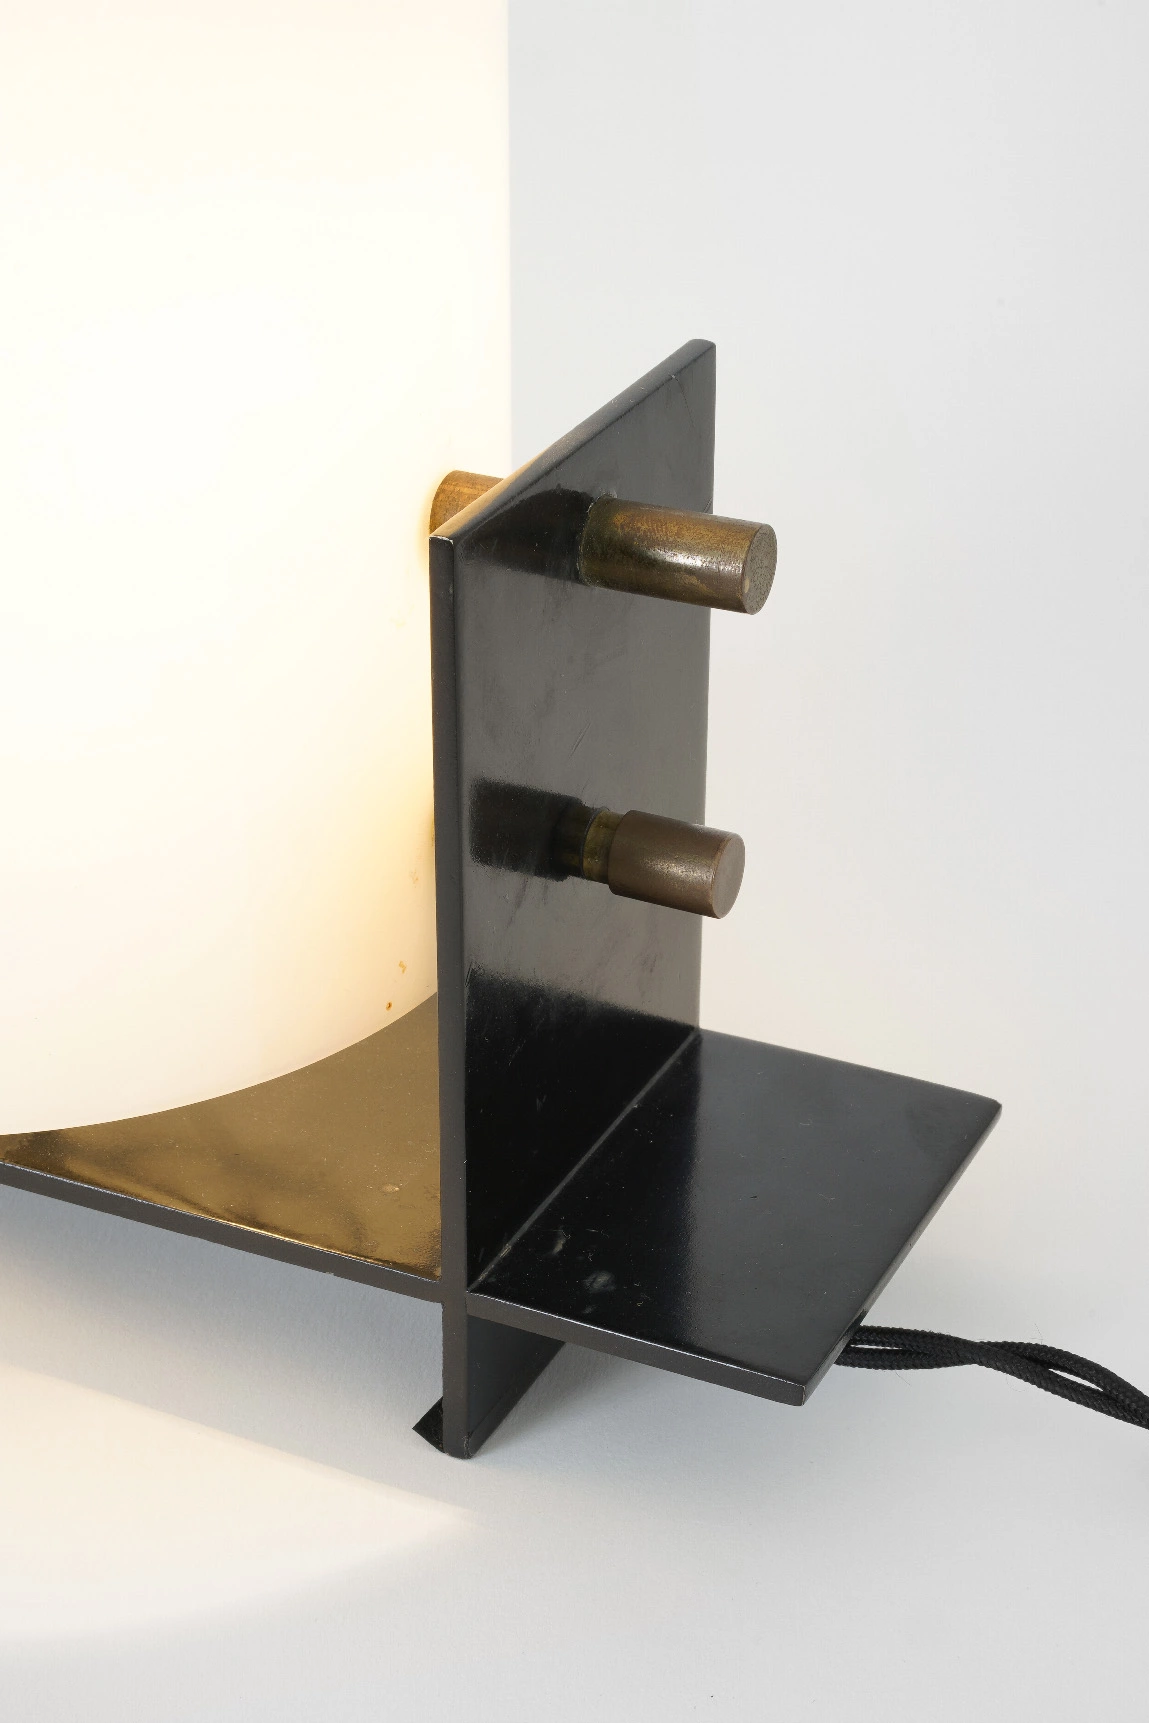 Lampe perspex & metal - Georges Frydman - Table light - Galerie kreo